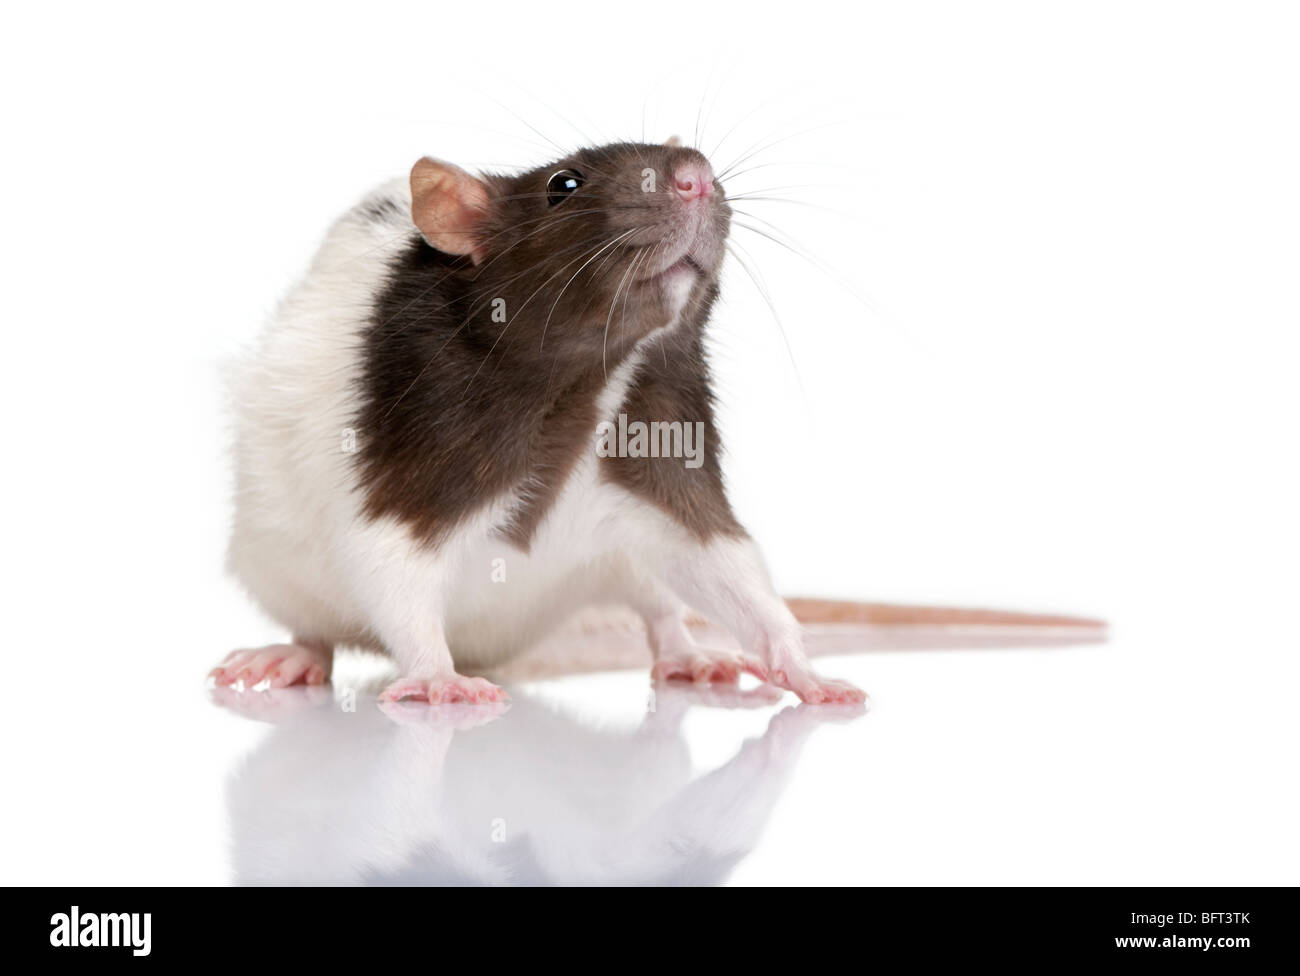 Rata, 1 año de edad, pararse delante de un fondo blanco, Foto de estudio Foto de stock